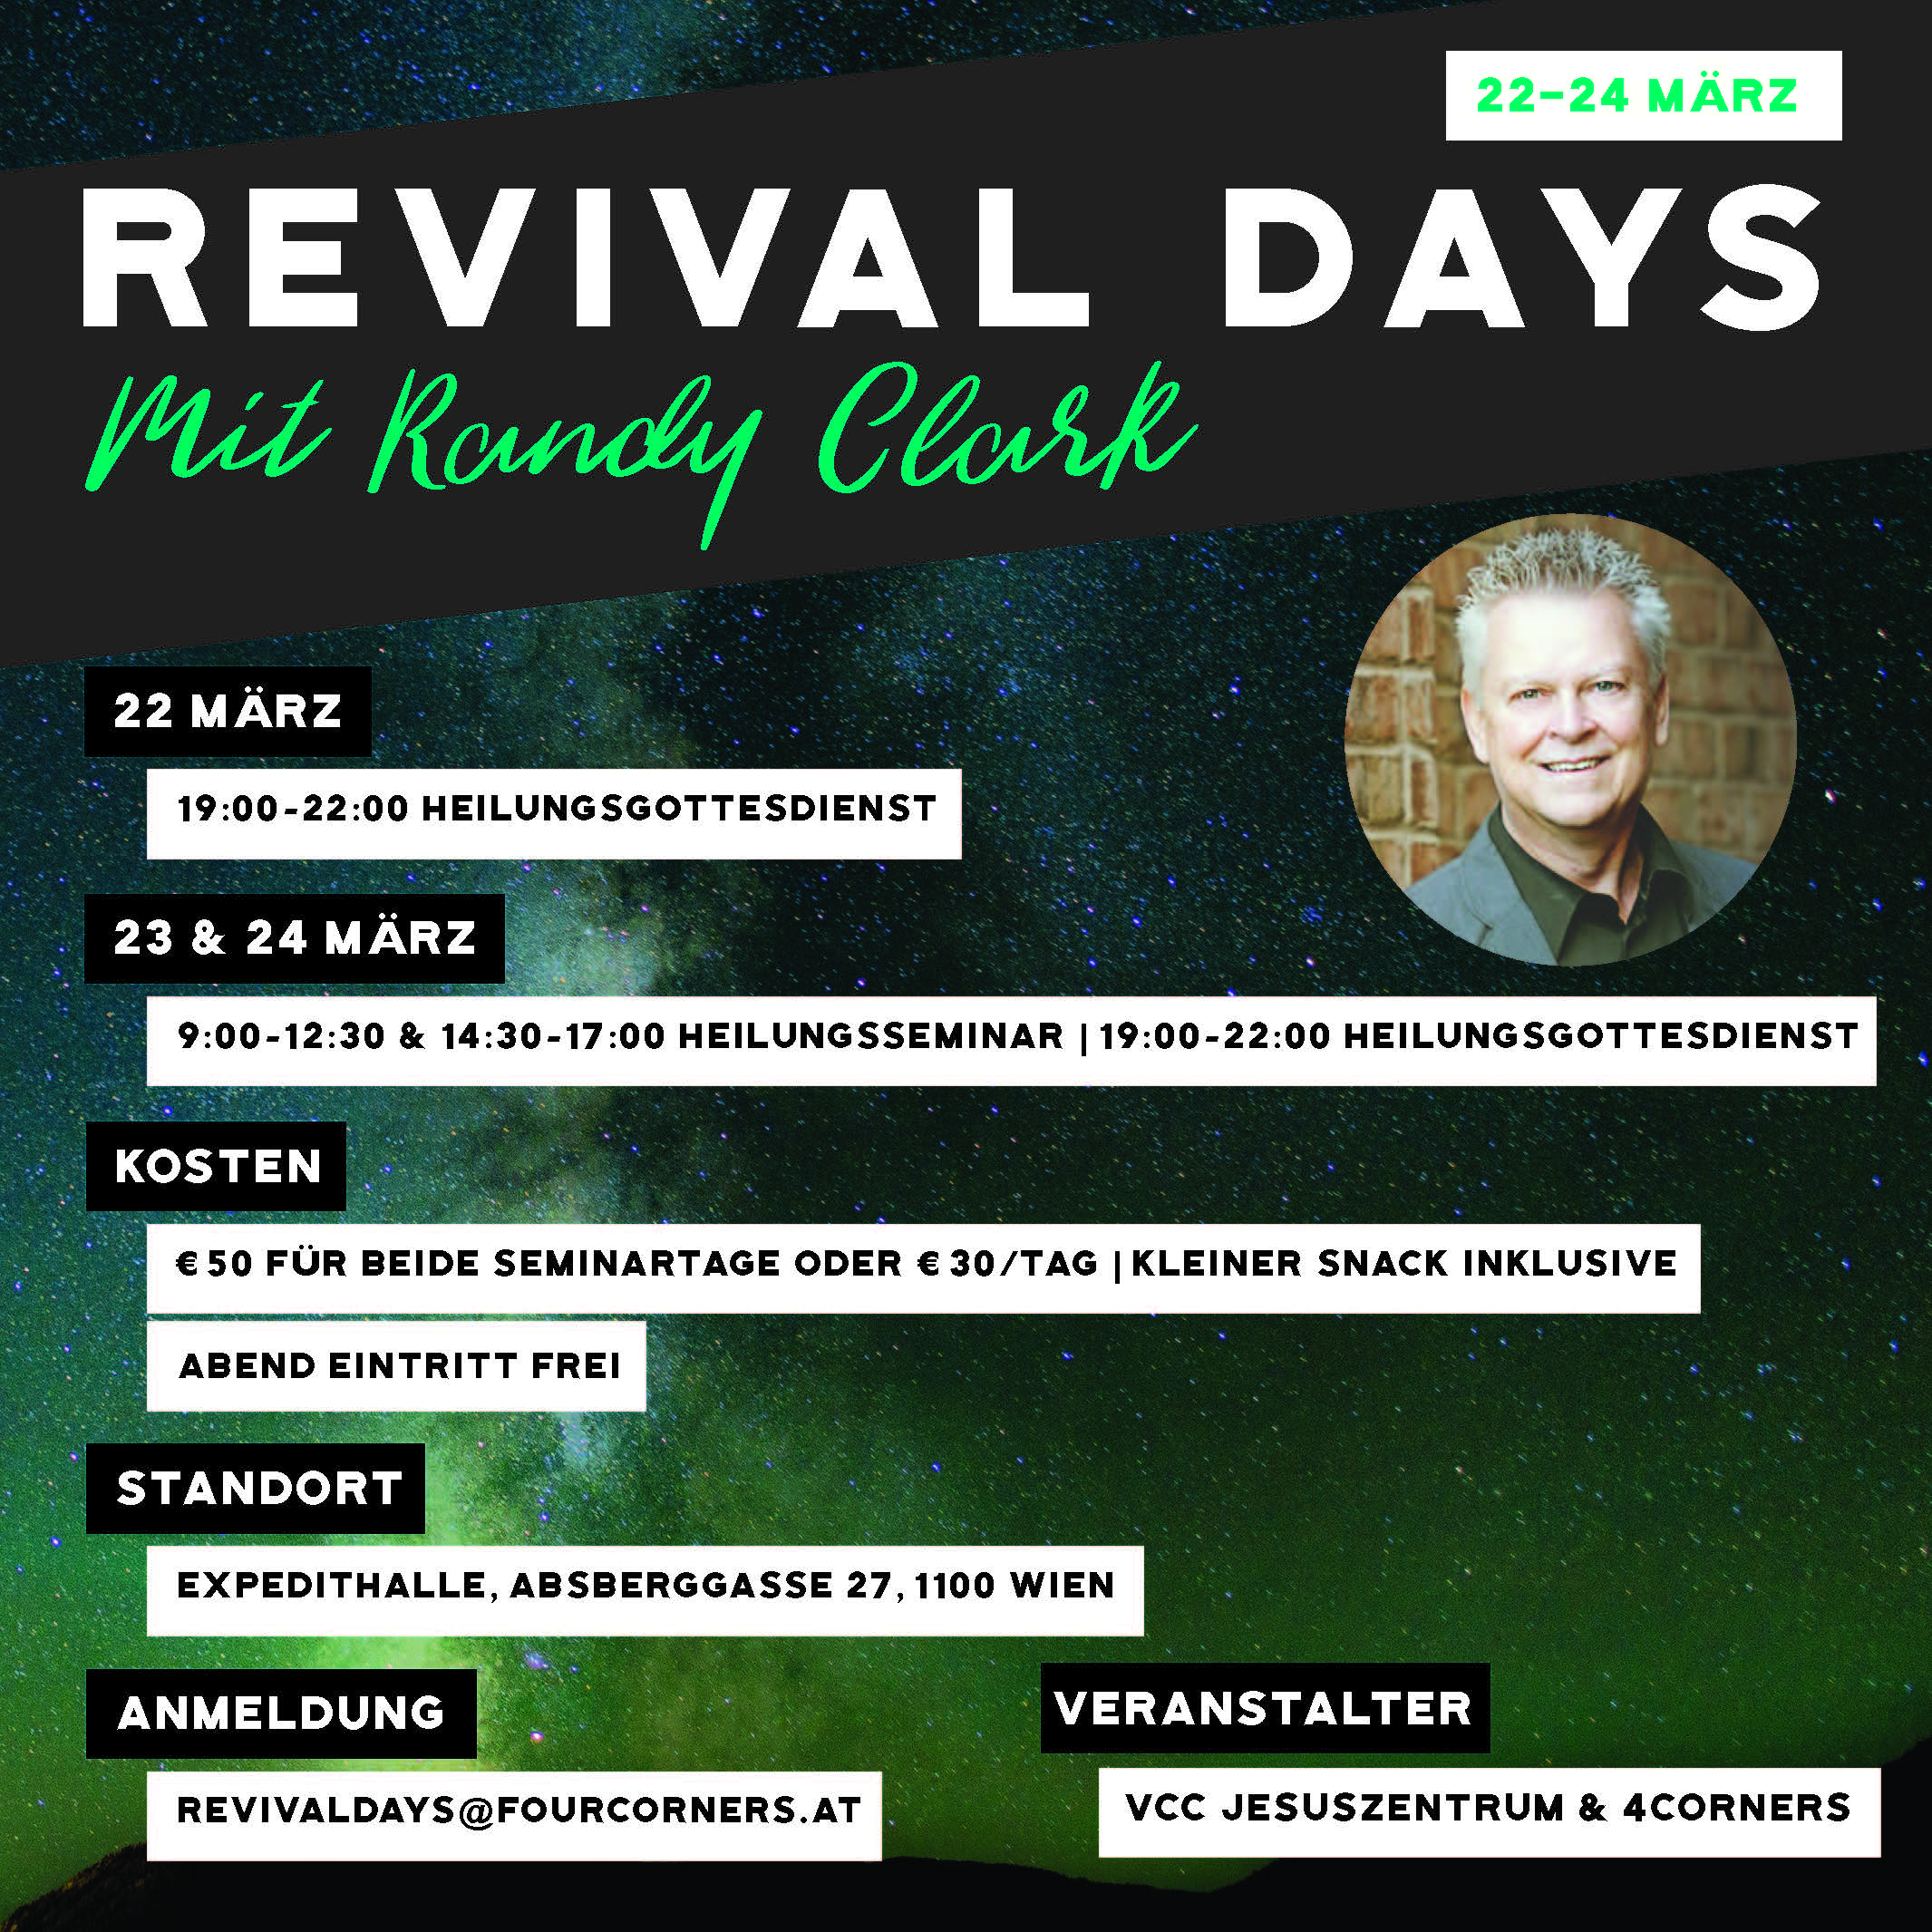 RevivalDays-RandyClark_Deutsch